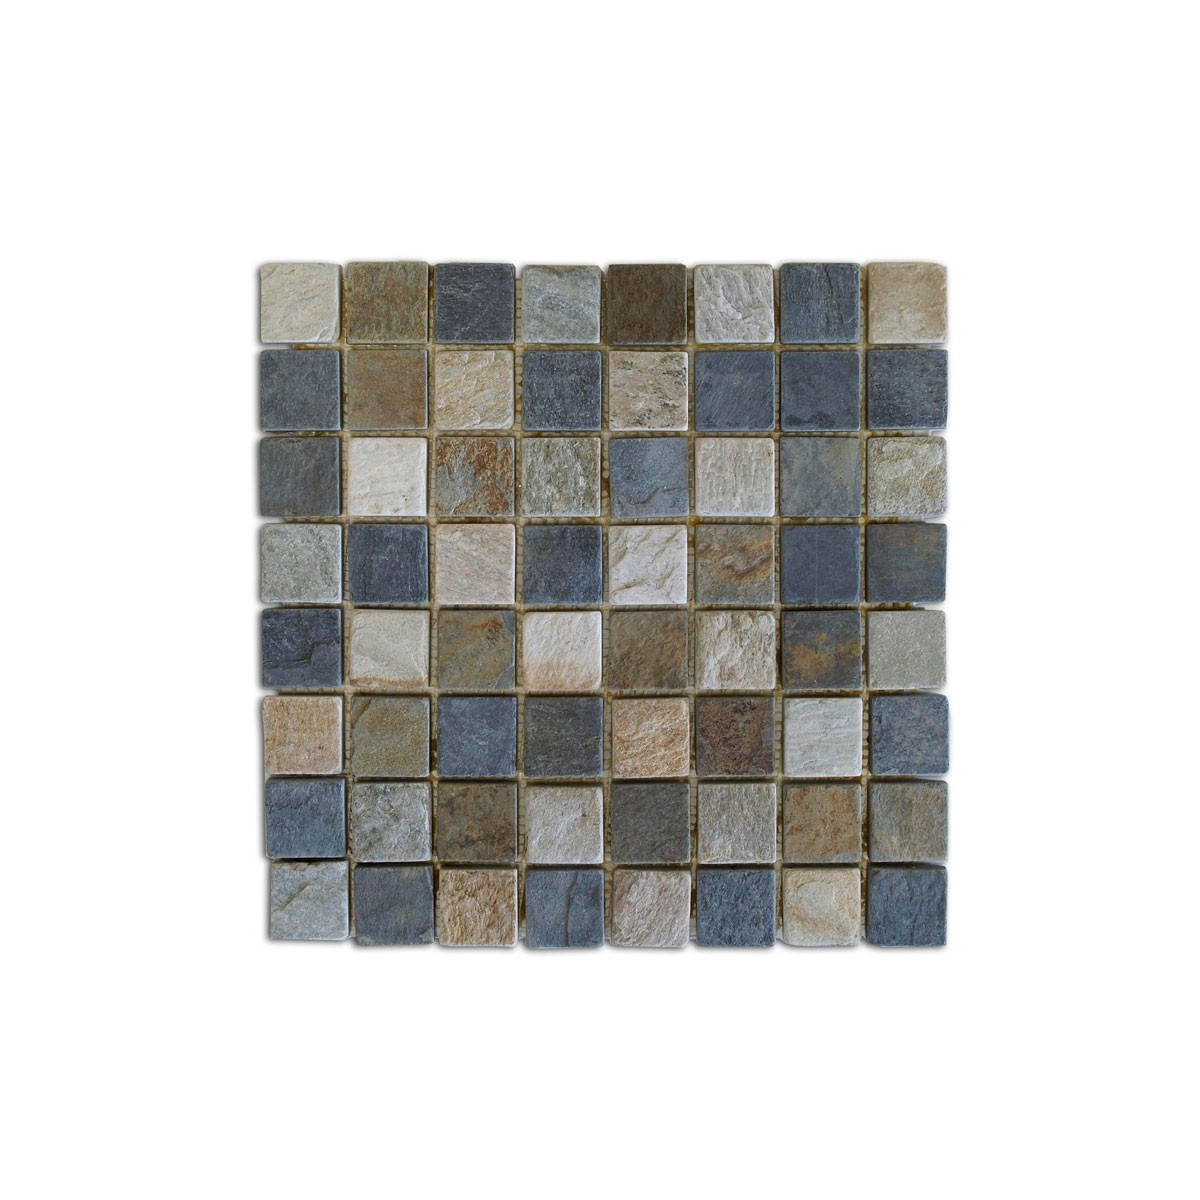 Mosaico Brasil 30.5x30.5x1 (m2)